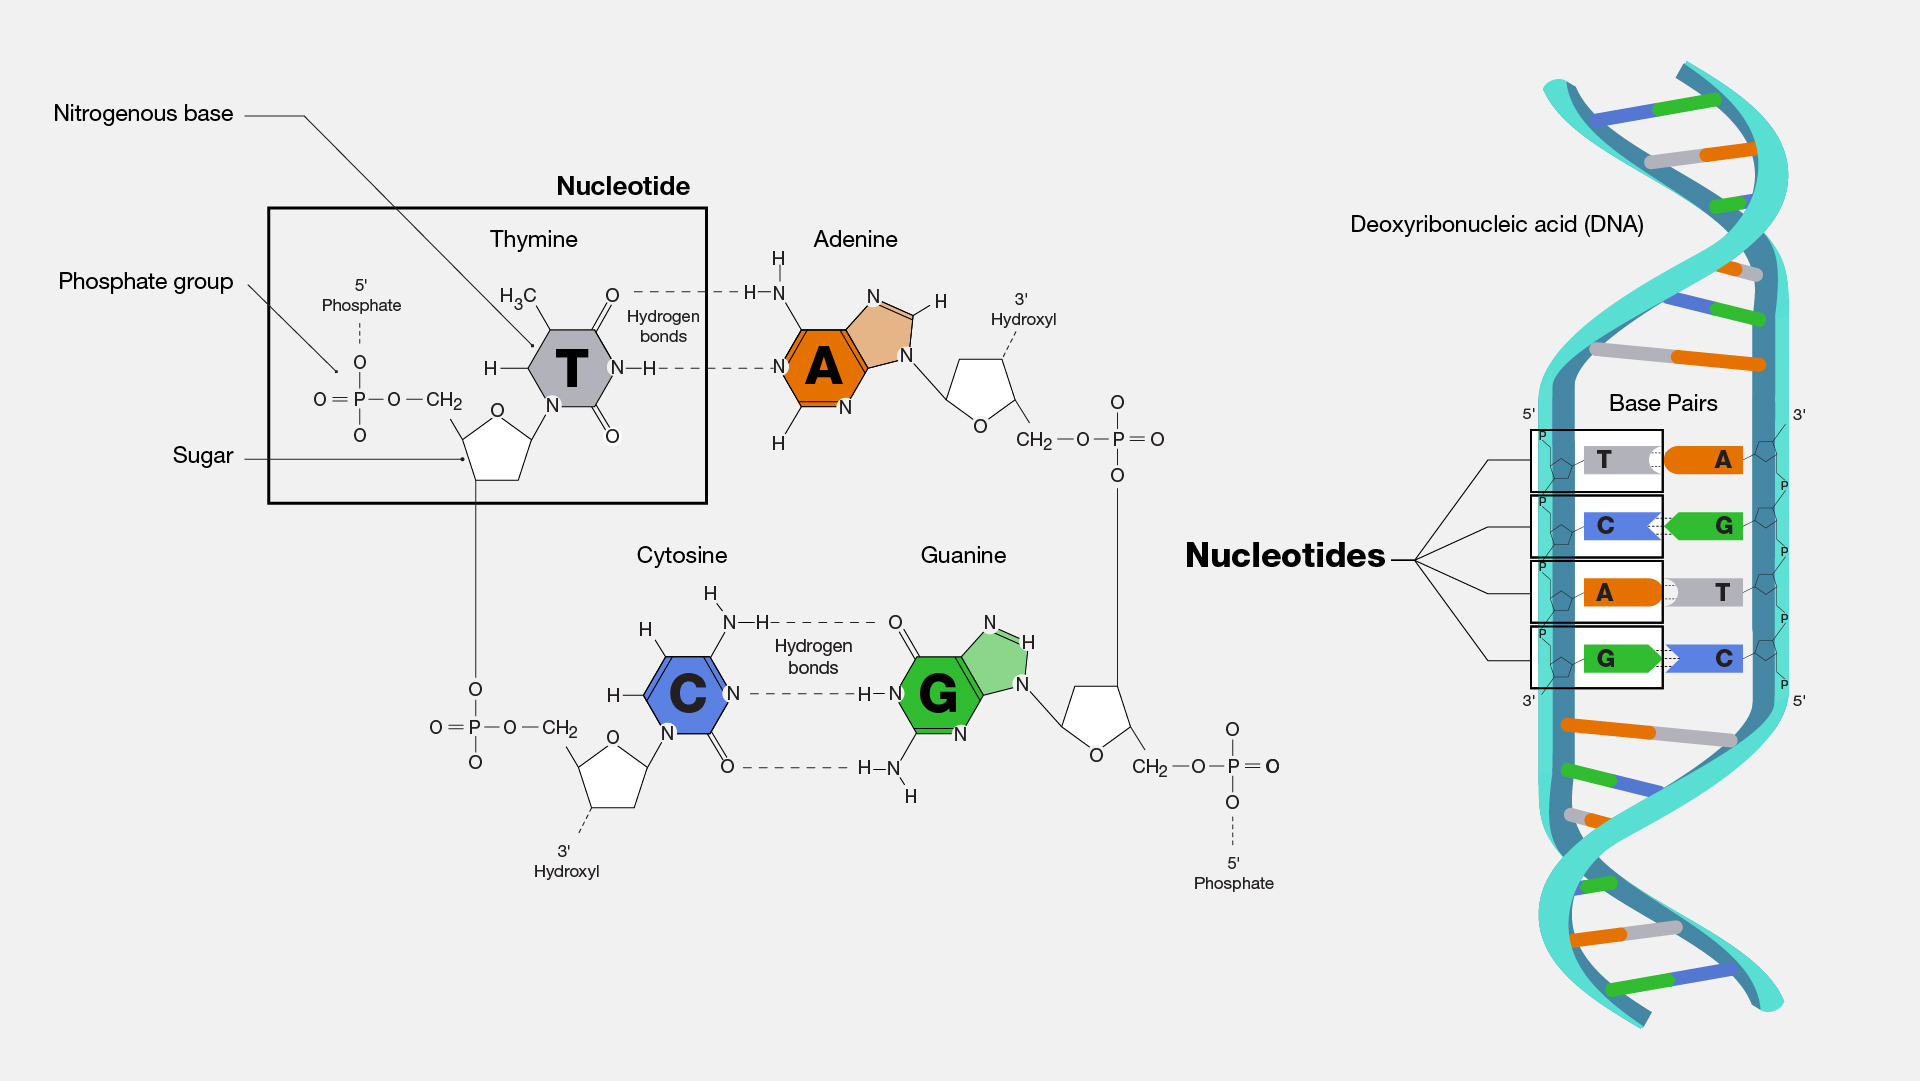 dna molecule nucleotide